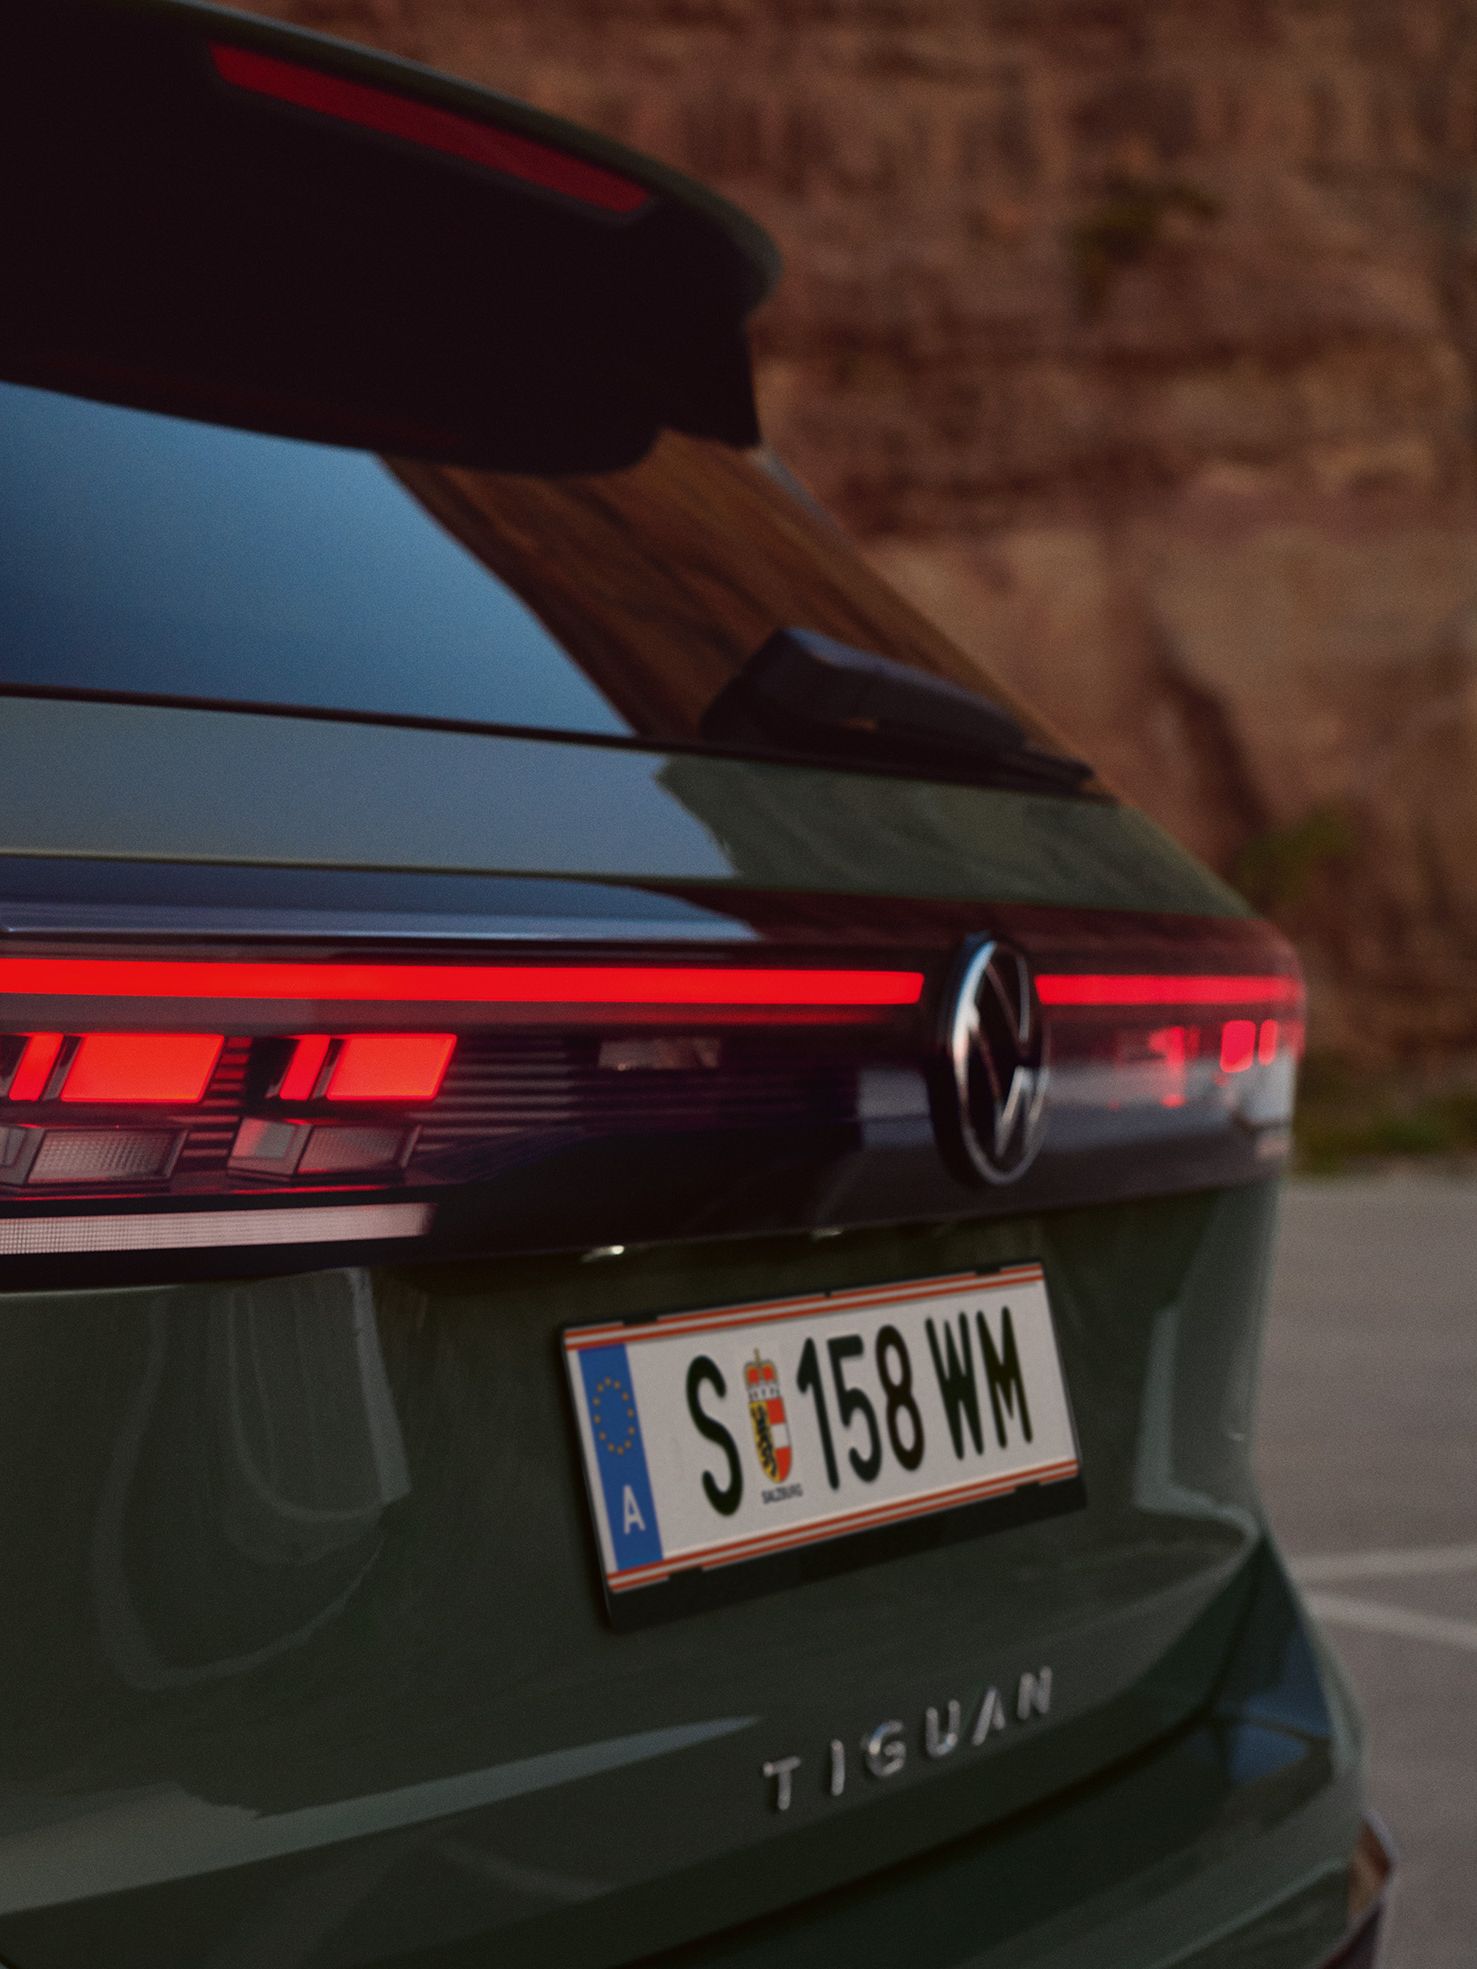 Detailansicht der Heck-Lichtsignatur eines vor einer felsigen Landschaft geparkten dunkelgrünen VW Tiguan.